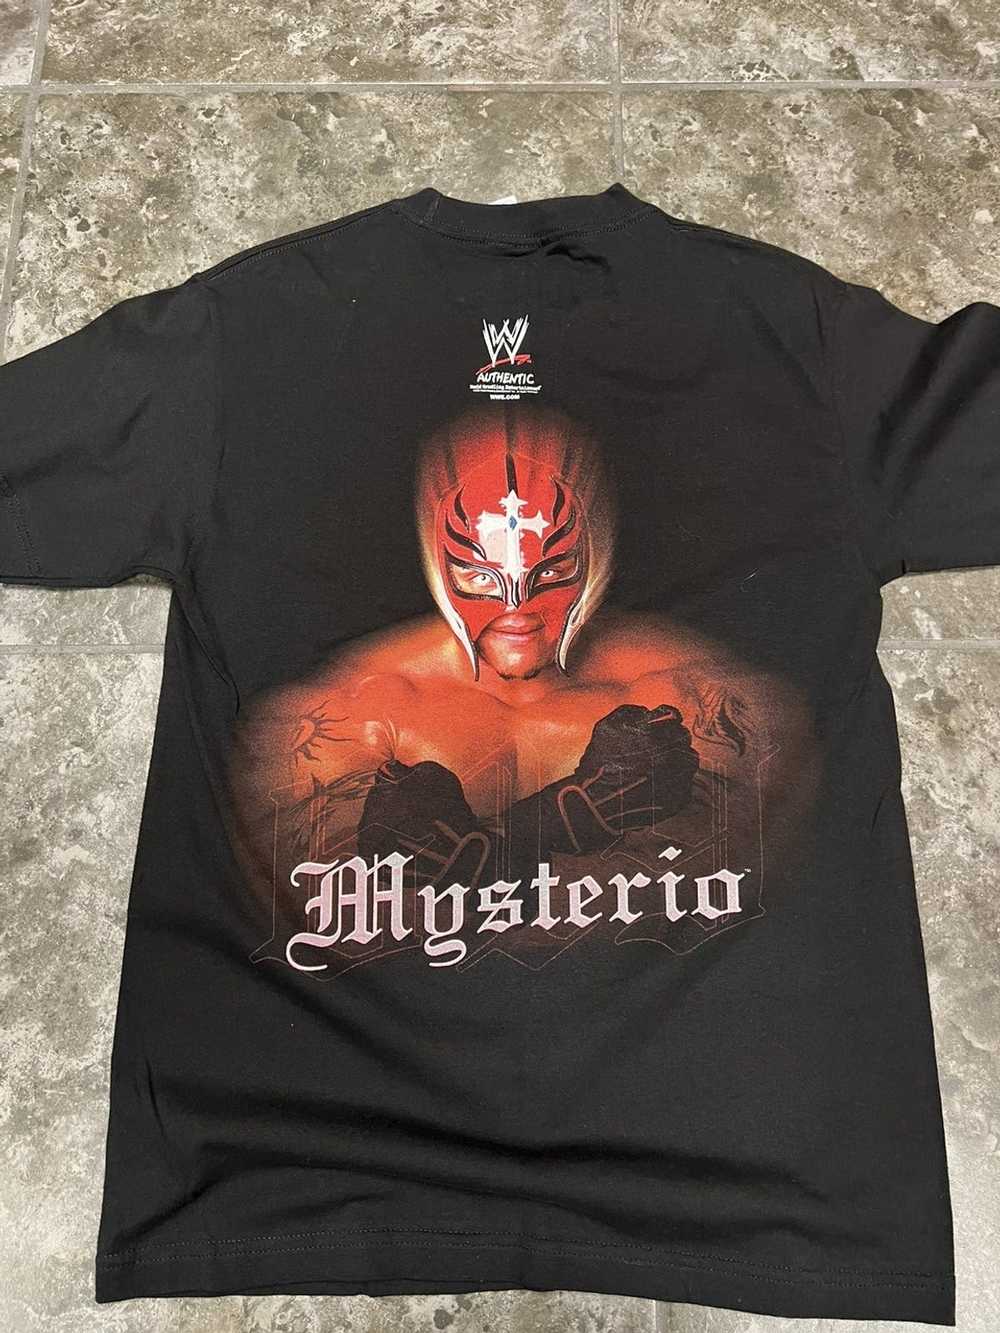 Vintage × Wwe Vintage WWE Rey Mysterio 619 Tshirt - image 3